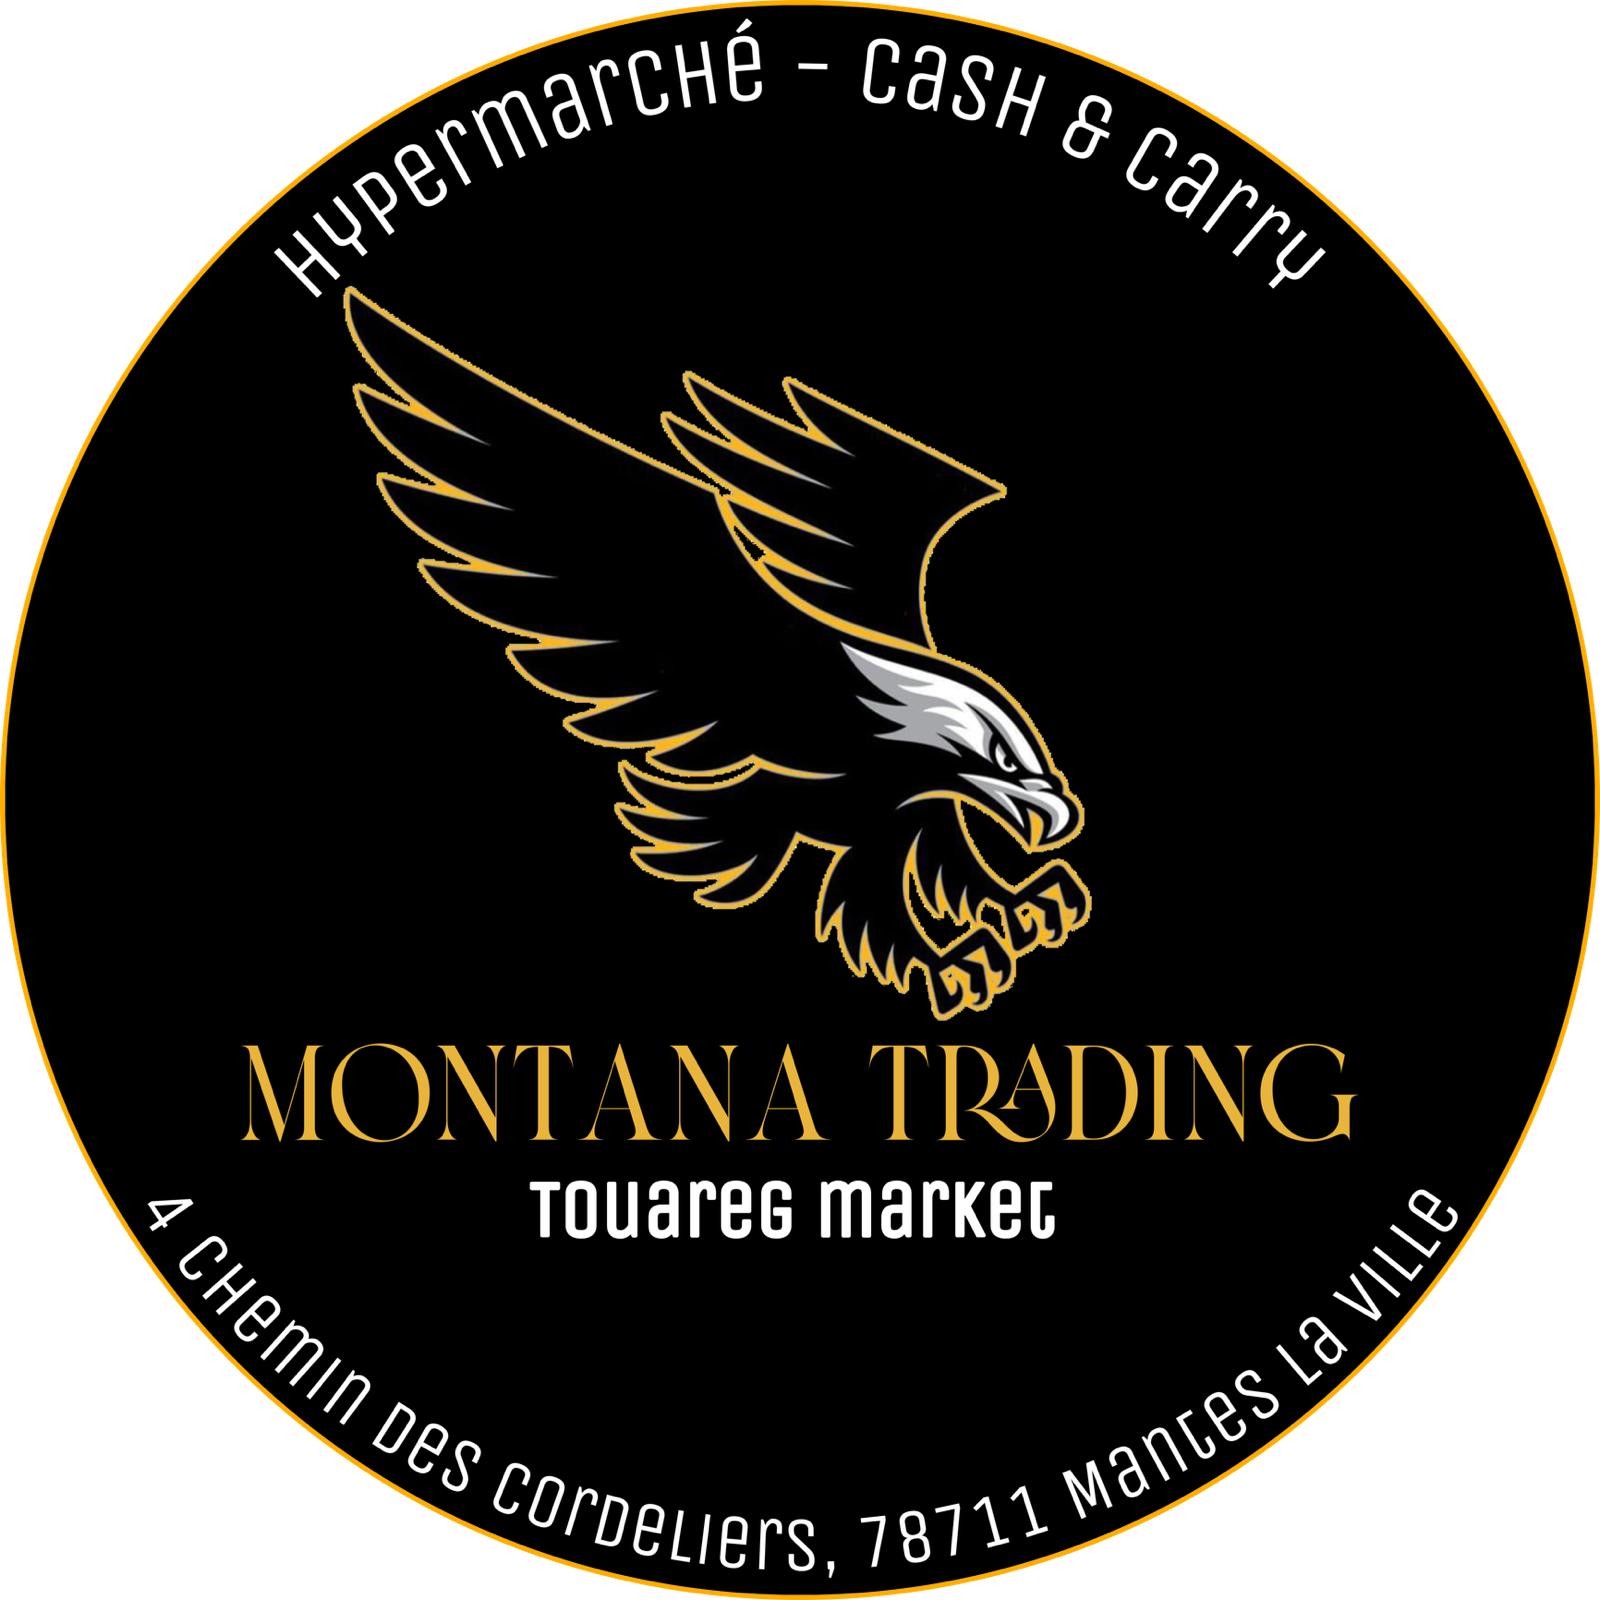 Touareg Market (Montana Trading)